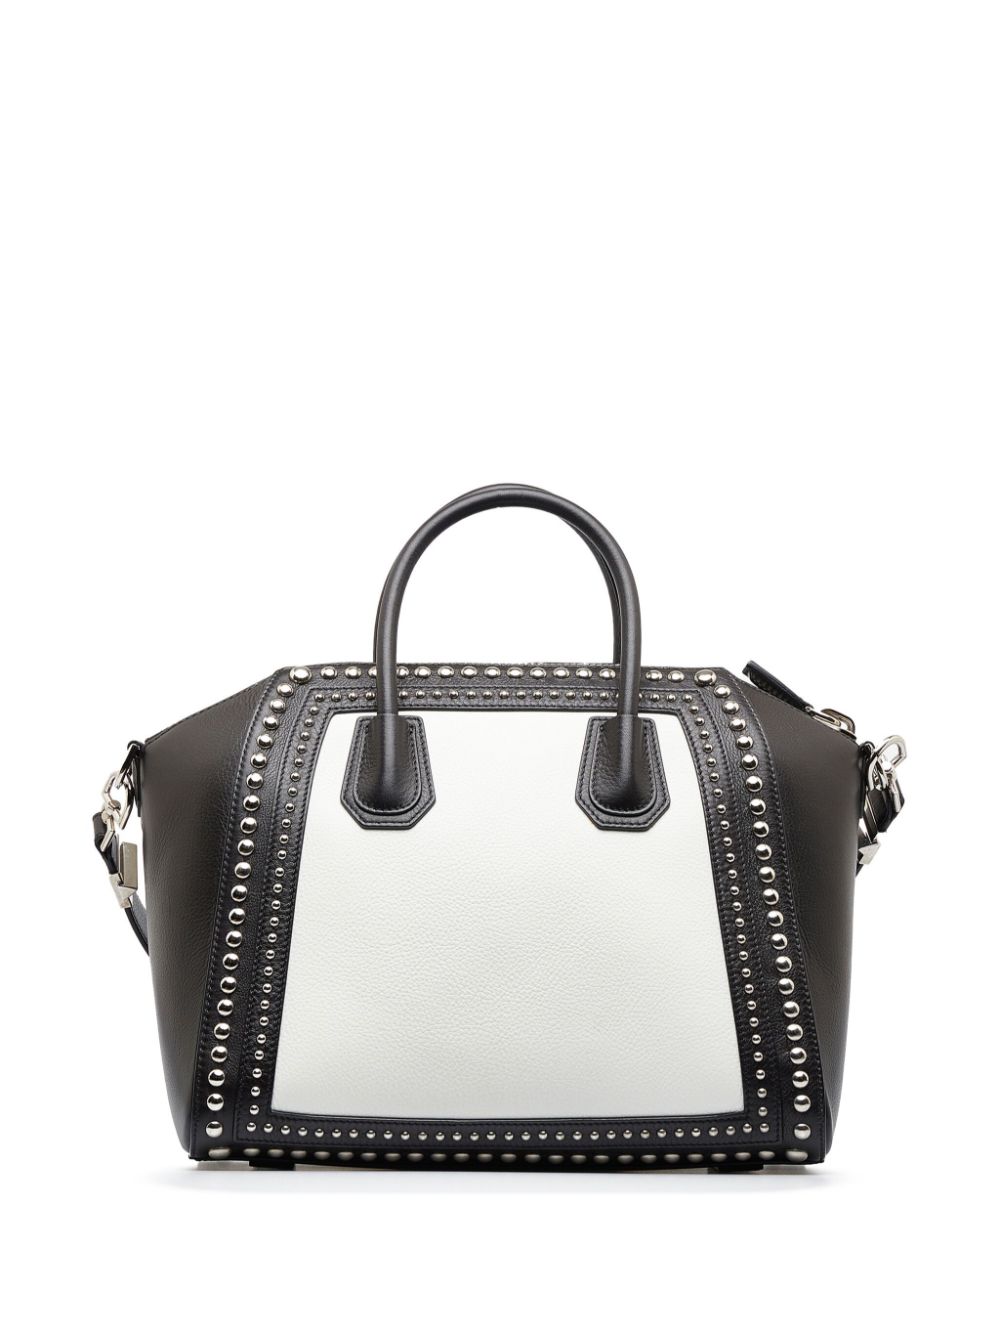 Givenchy Pre-Owned 2015 medium Antigona tote bag - Zwart